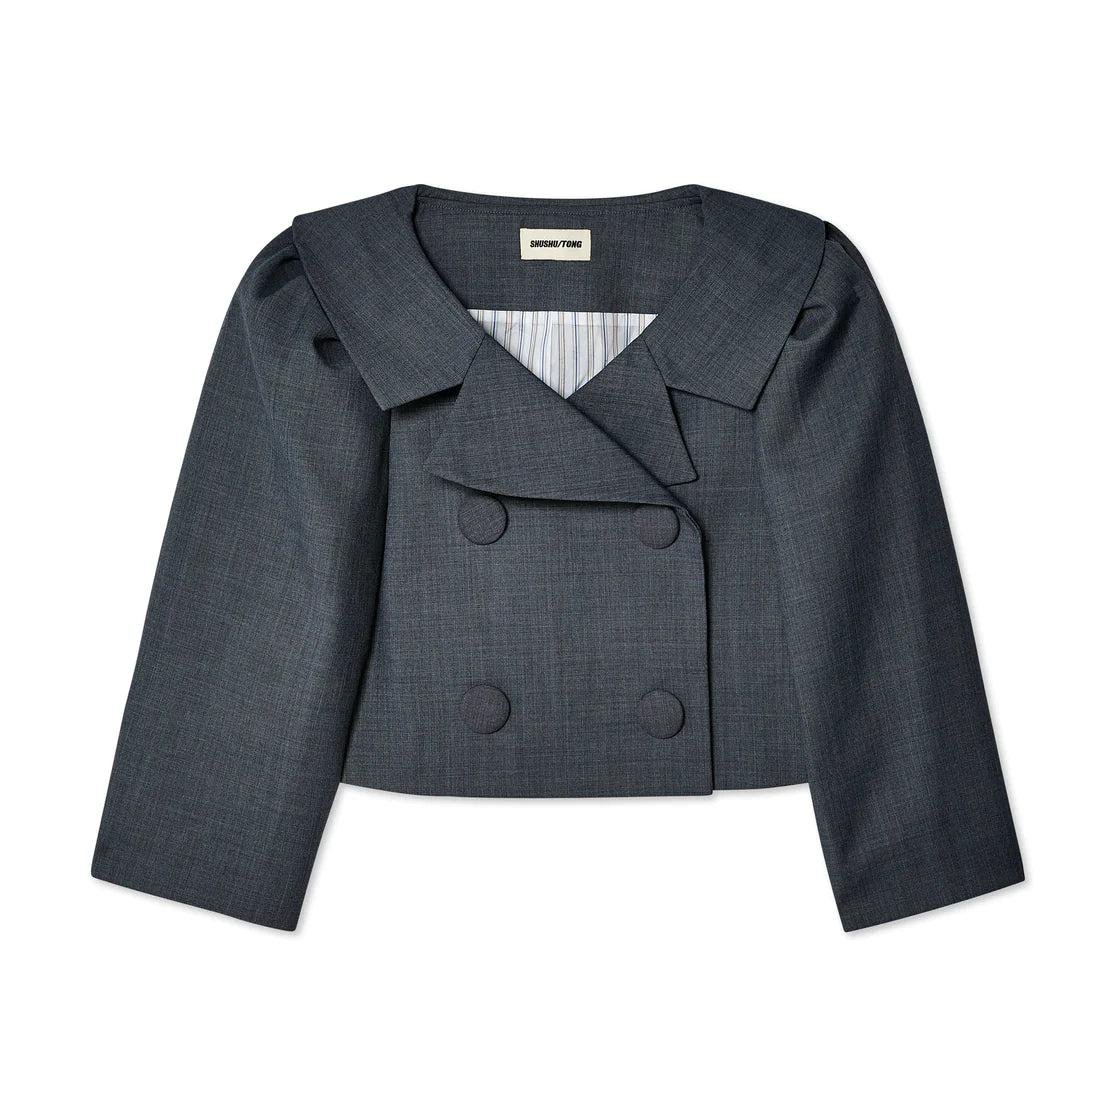 SHUSHU/TONG - Women's Puff-Sleeved Lapel Collar Short Jacket - (Grey) by SHUSHU/TONG